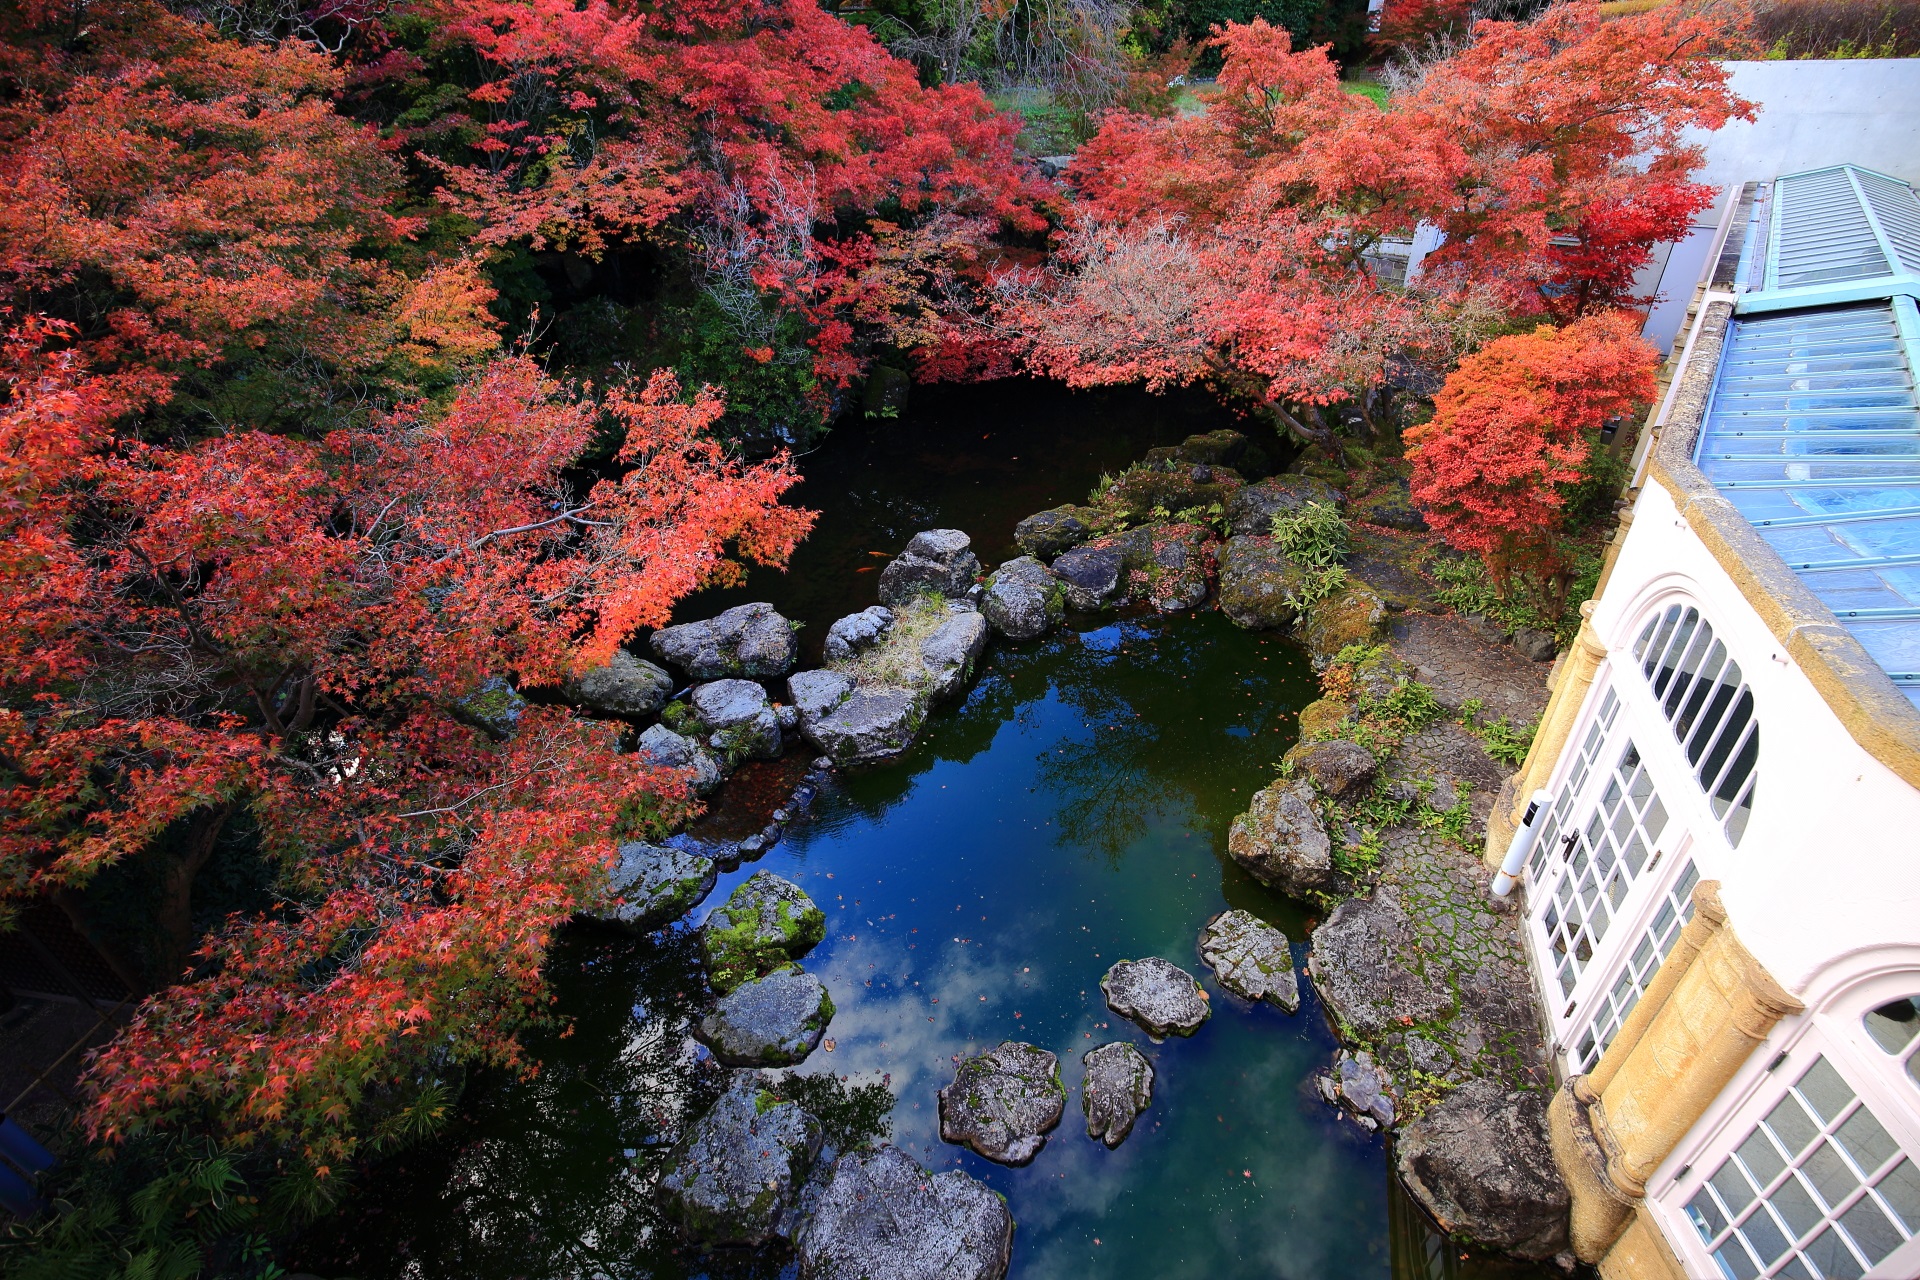 上から見下ろす違う雰囲気の素晴らしい秋色の池とガラスの通路